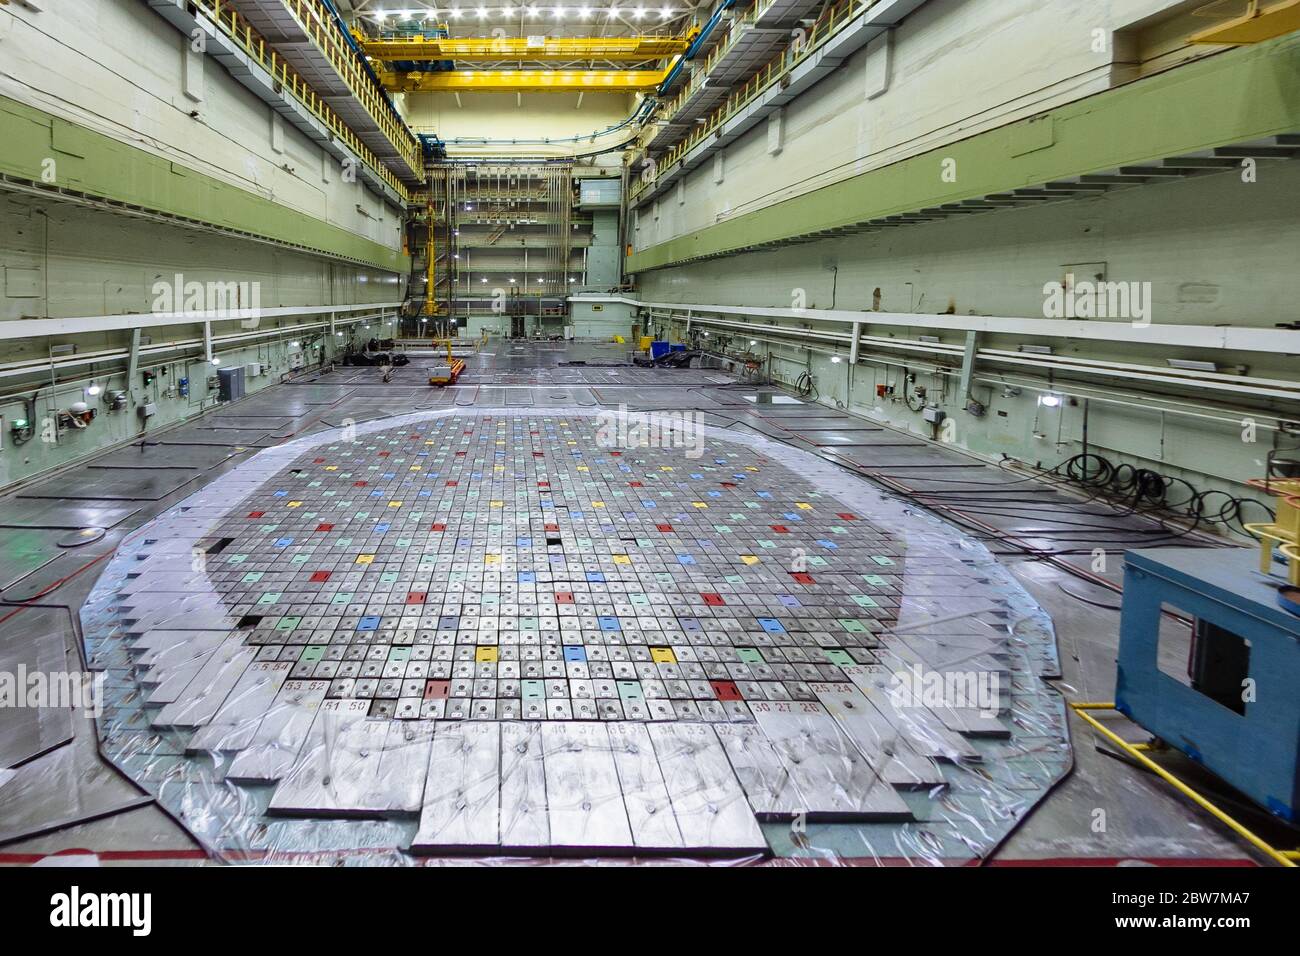 Kernkraftwerk. Zentrale Halle des Kernreaktors, Reaktordeckel, Wartung und Austausch der Reaktorbrennelemente. Stockfoto